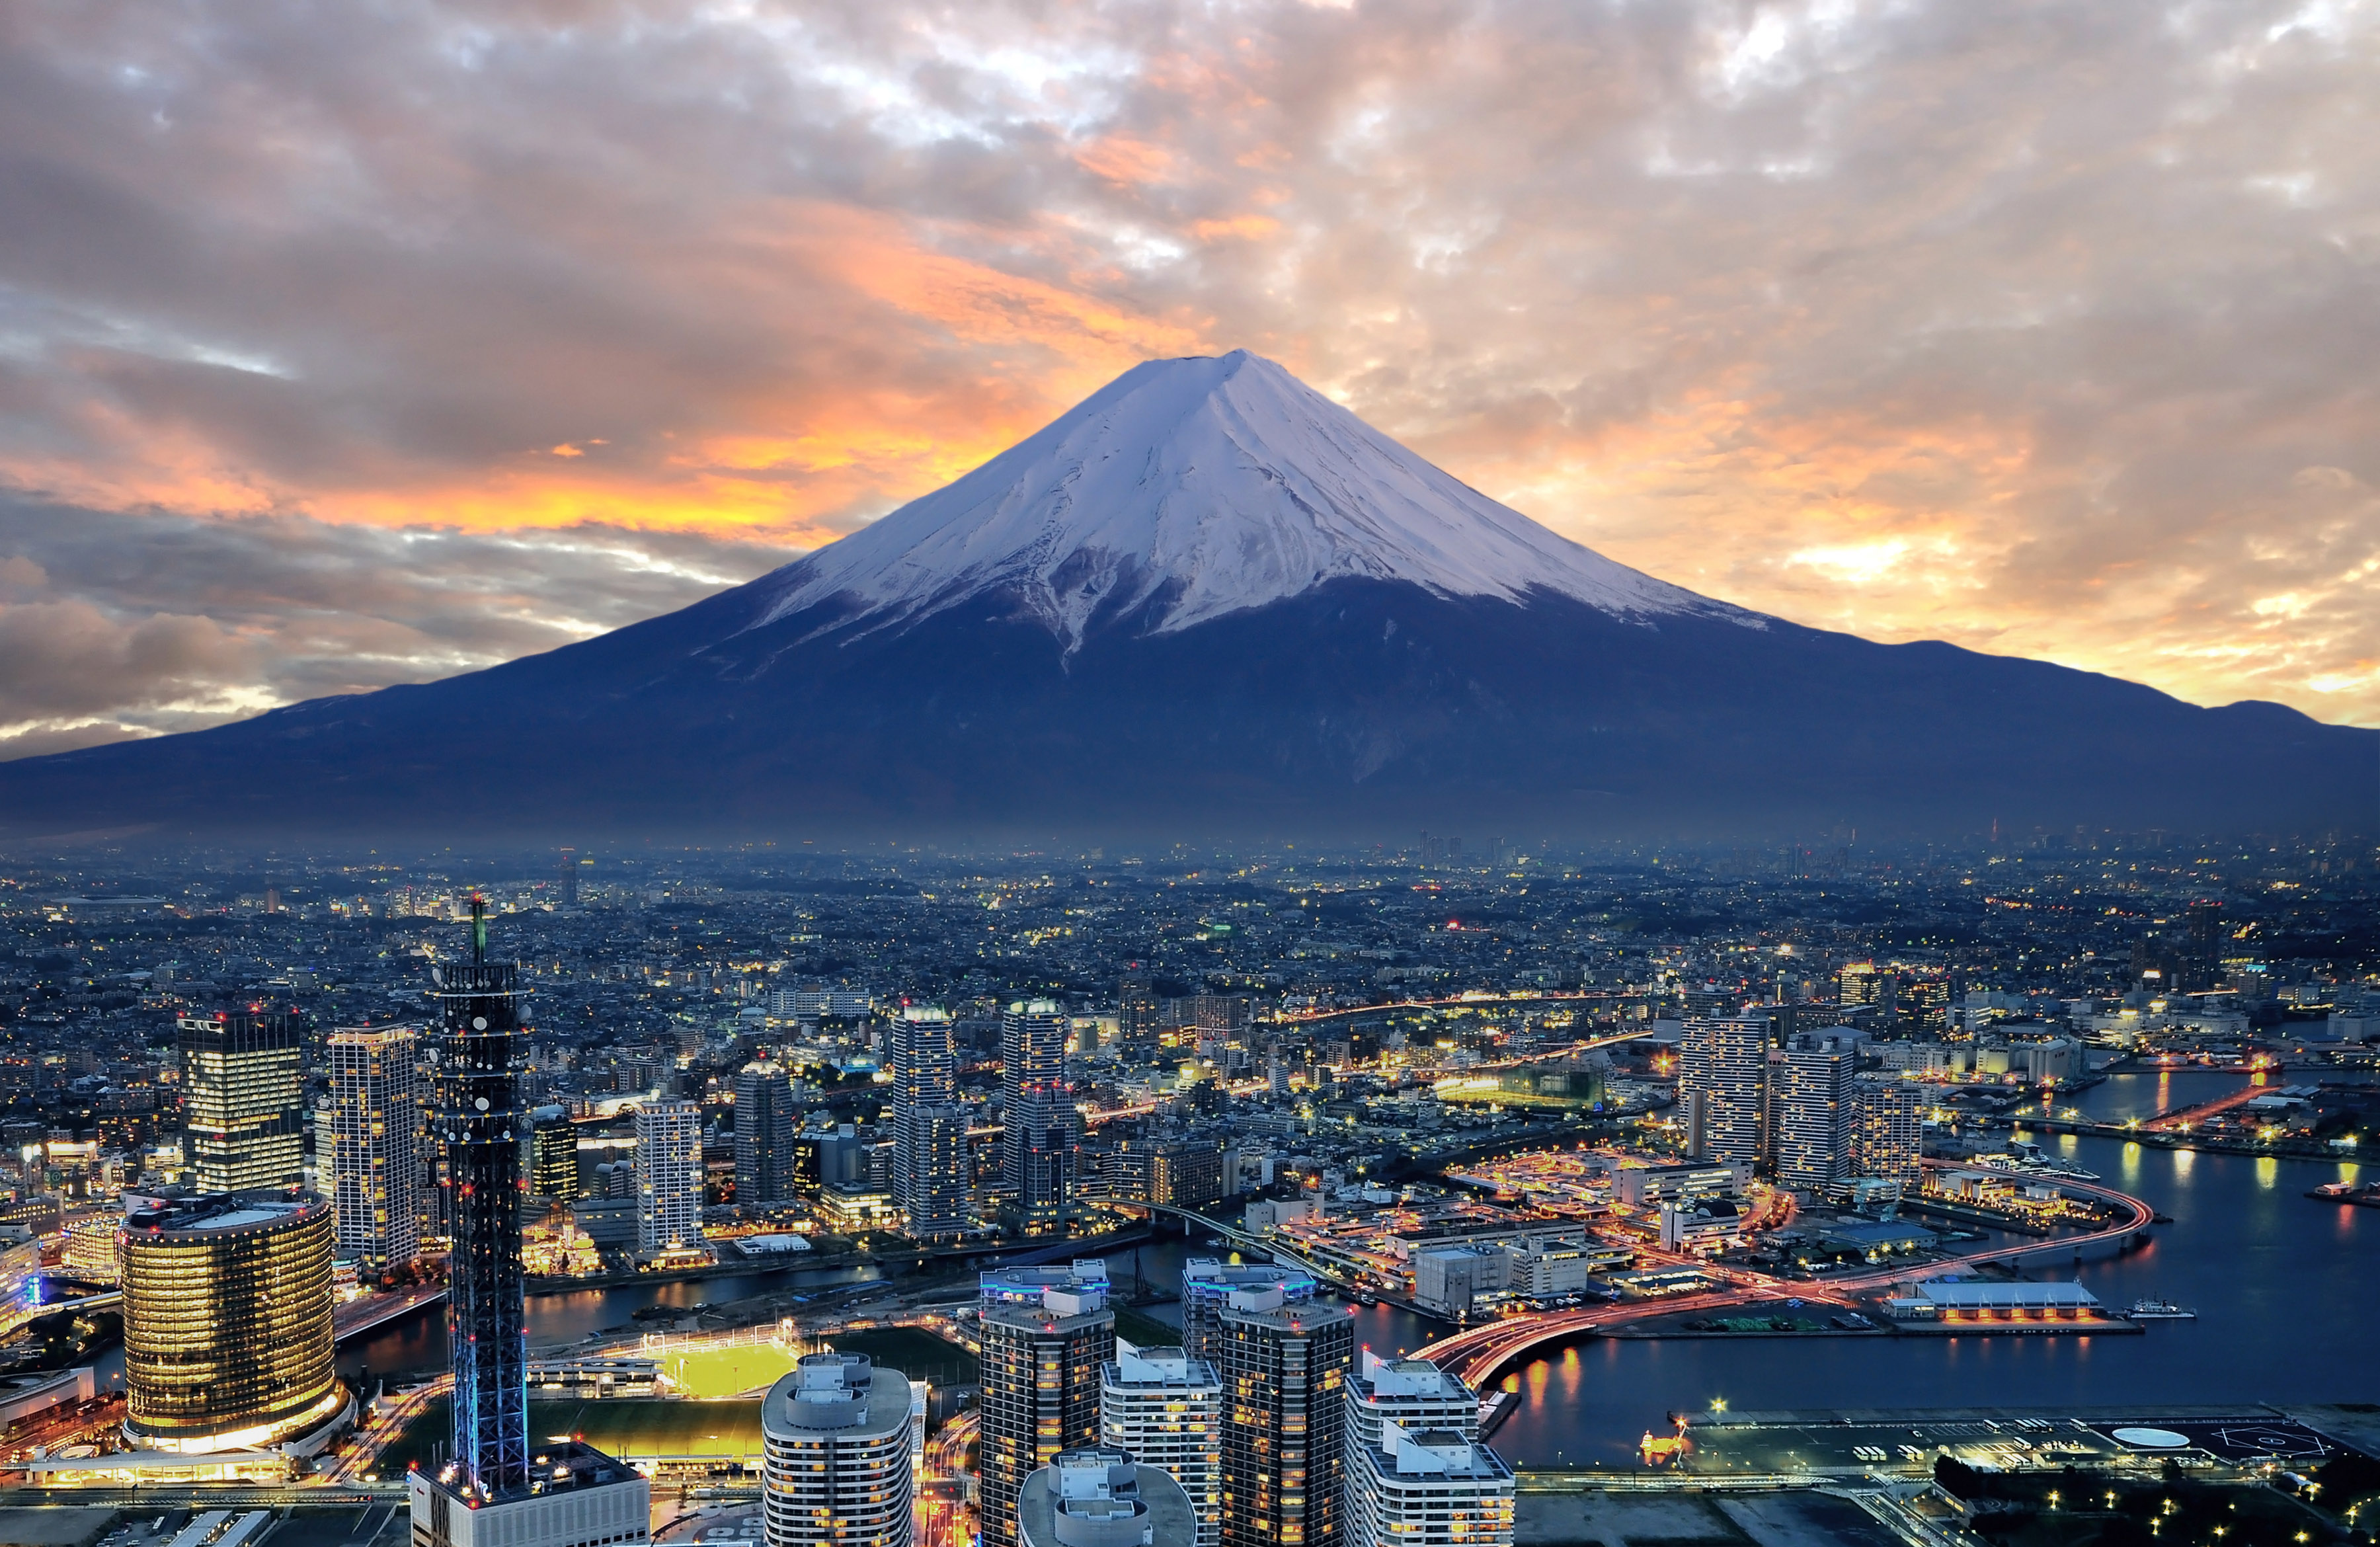 日本第一山了,富士山,自古以来被誉为灵峰,特别是在山顶部分设有浅间